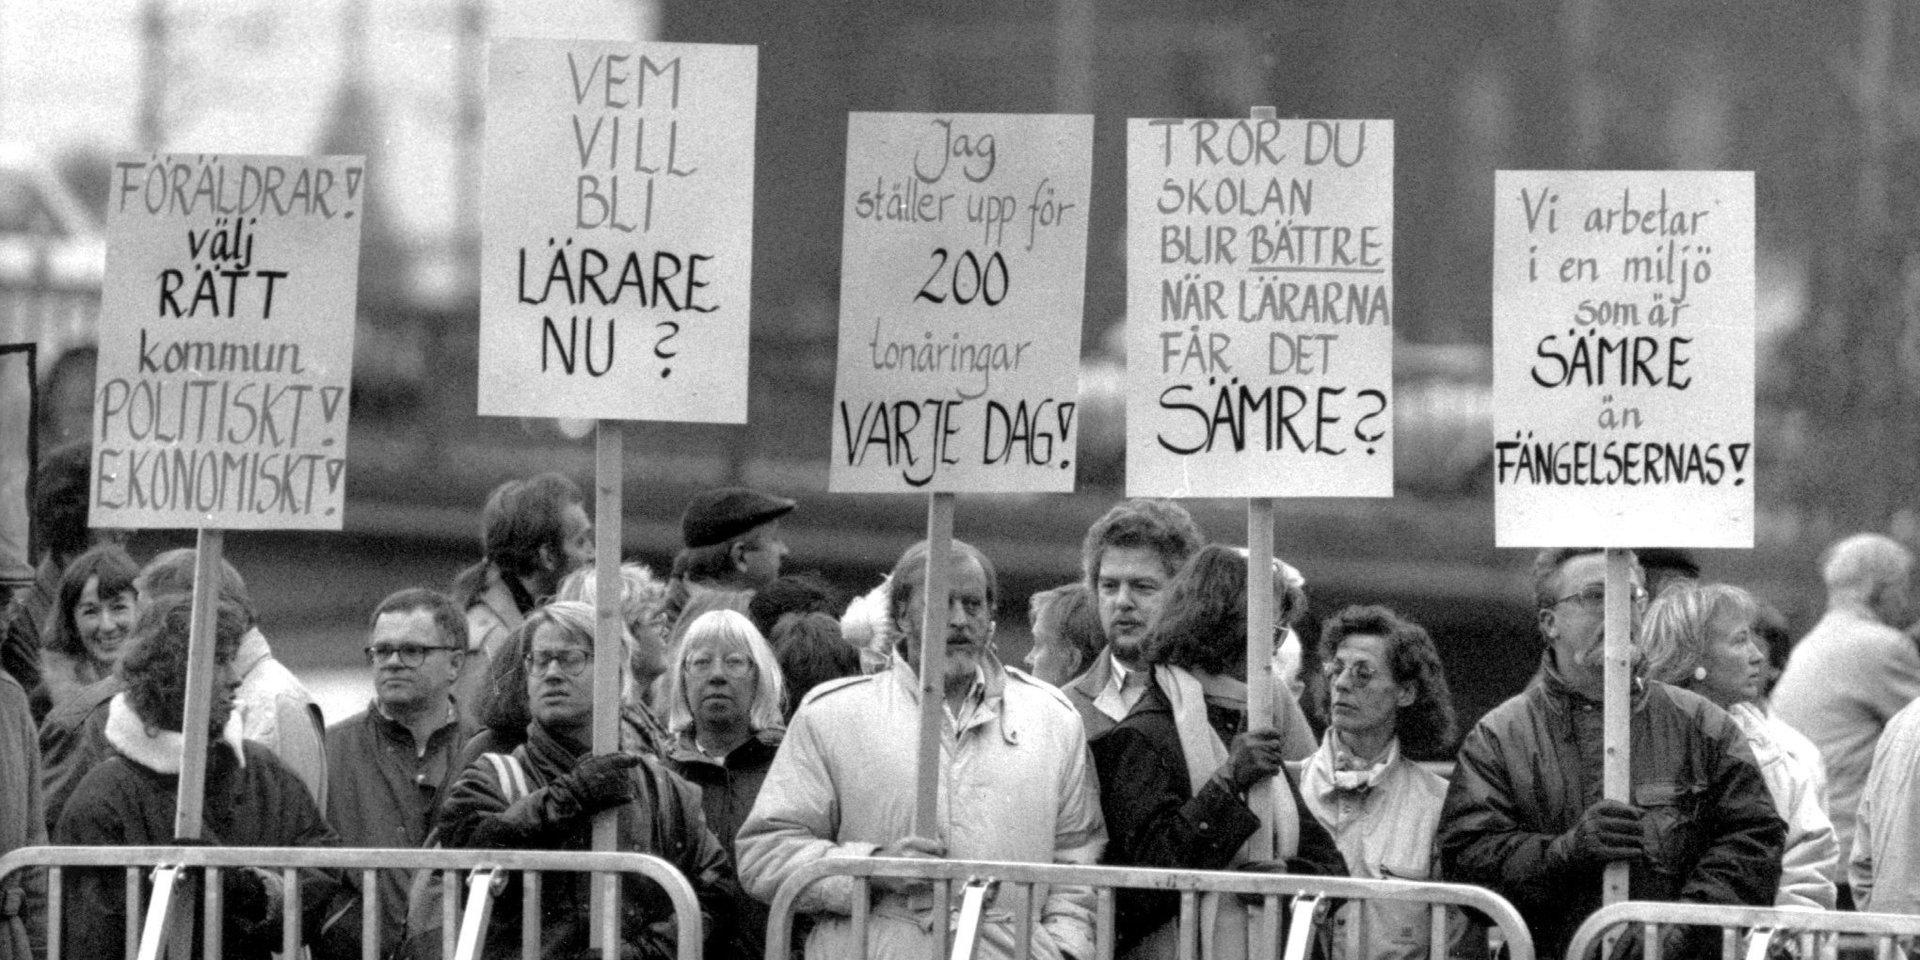 ©SCANPIX SWEDEN, 1989-11-20.
Lärare demonstrerar utanför Rosenbad i Stockholm.
Står med plakat bakom kravallstaket. Slagord för bättre miljö och lön i skolorna. Demonstranter.
Foto: Björn Larsson Ask/SCANPIX
Code: 30092